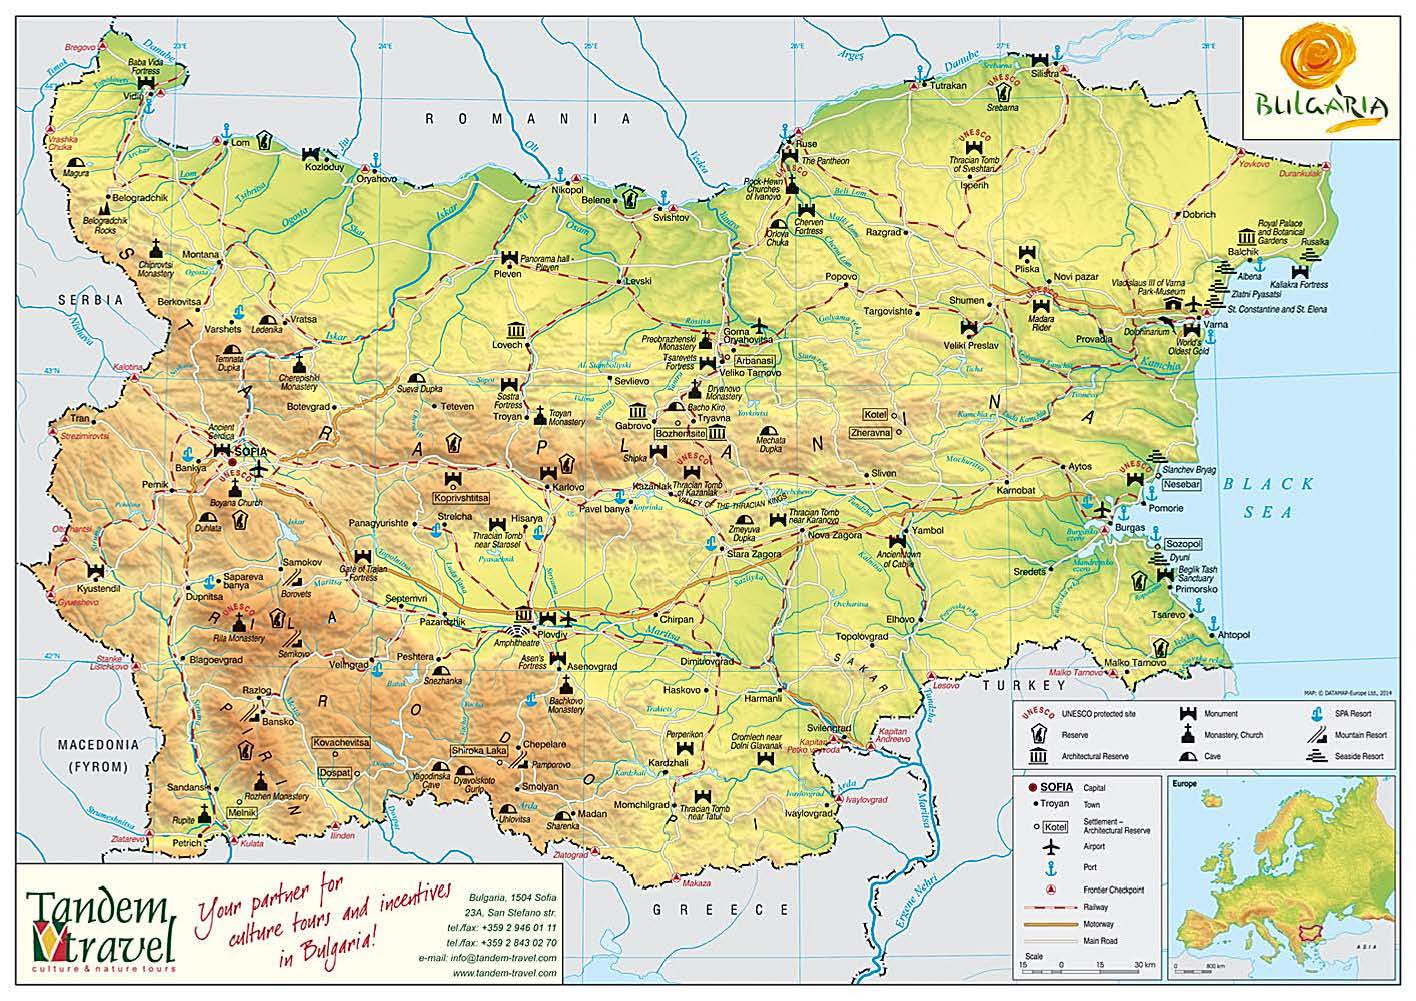 Bulgaria-Map4